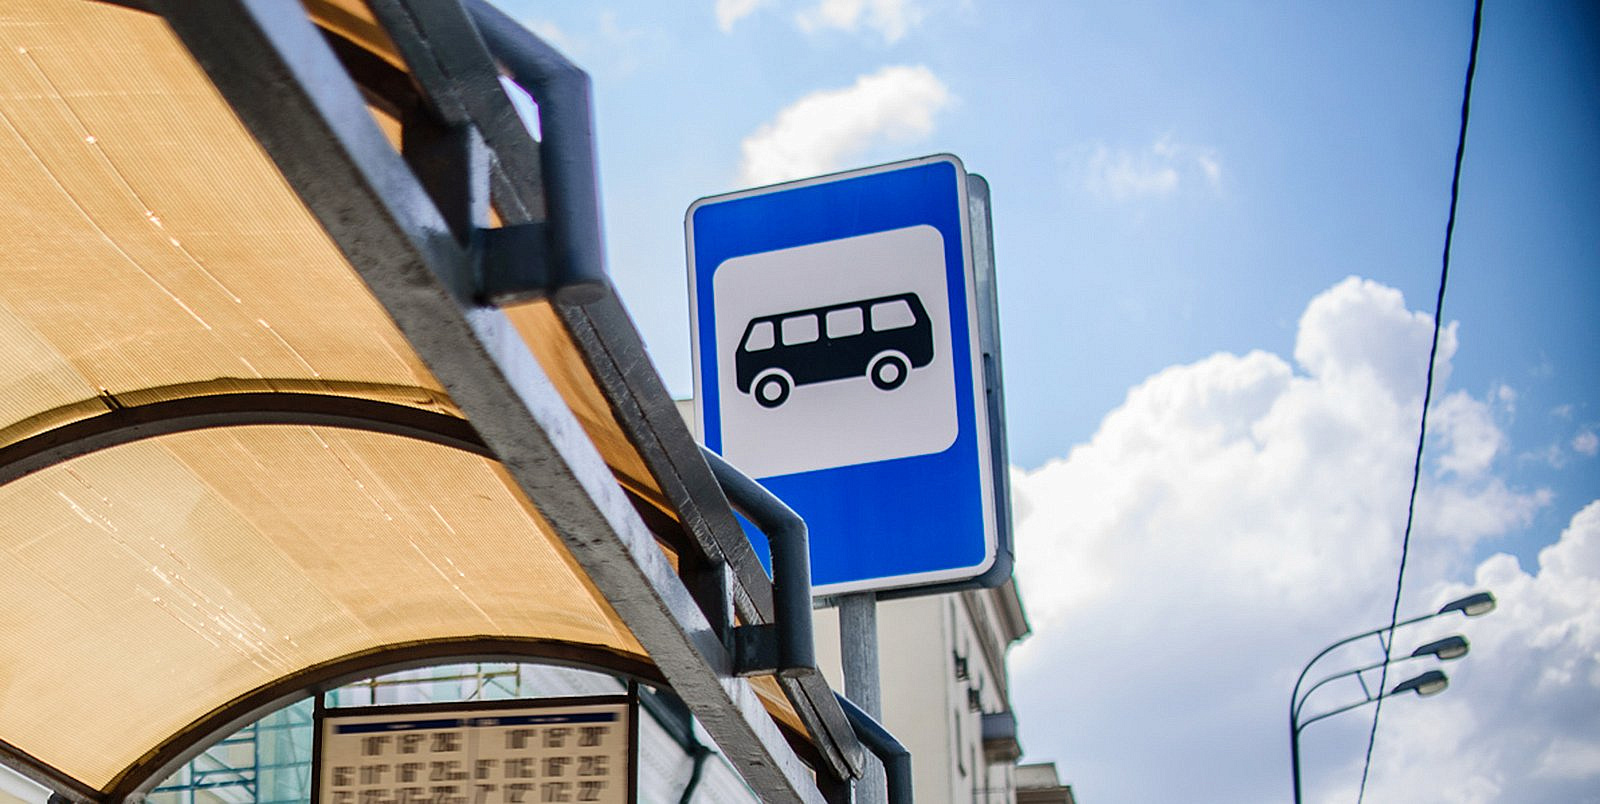 Две автобусные остановки переименованы в Кунцево и Переделкино